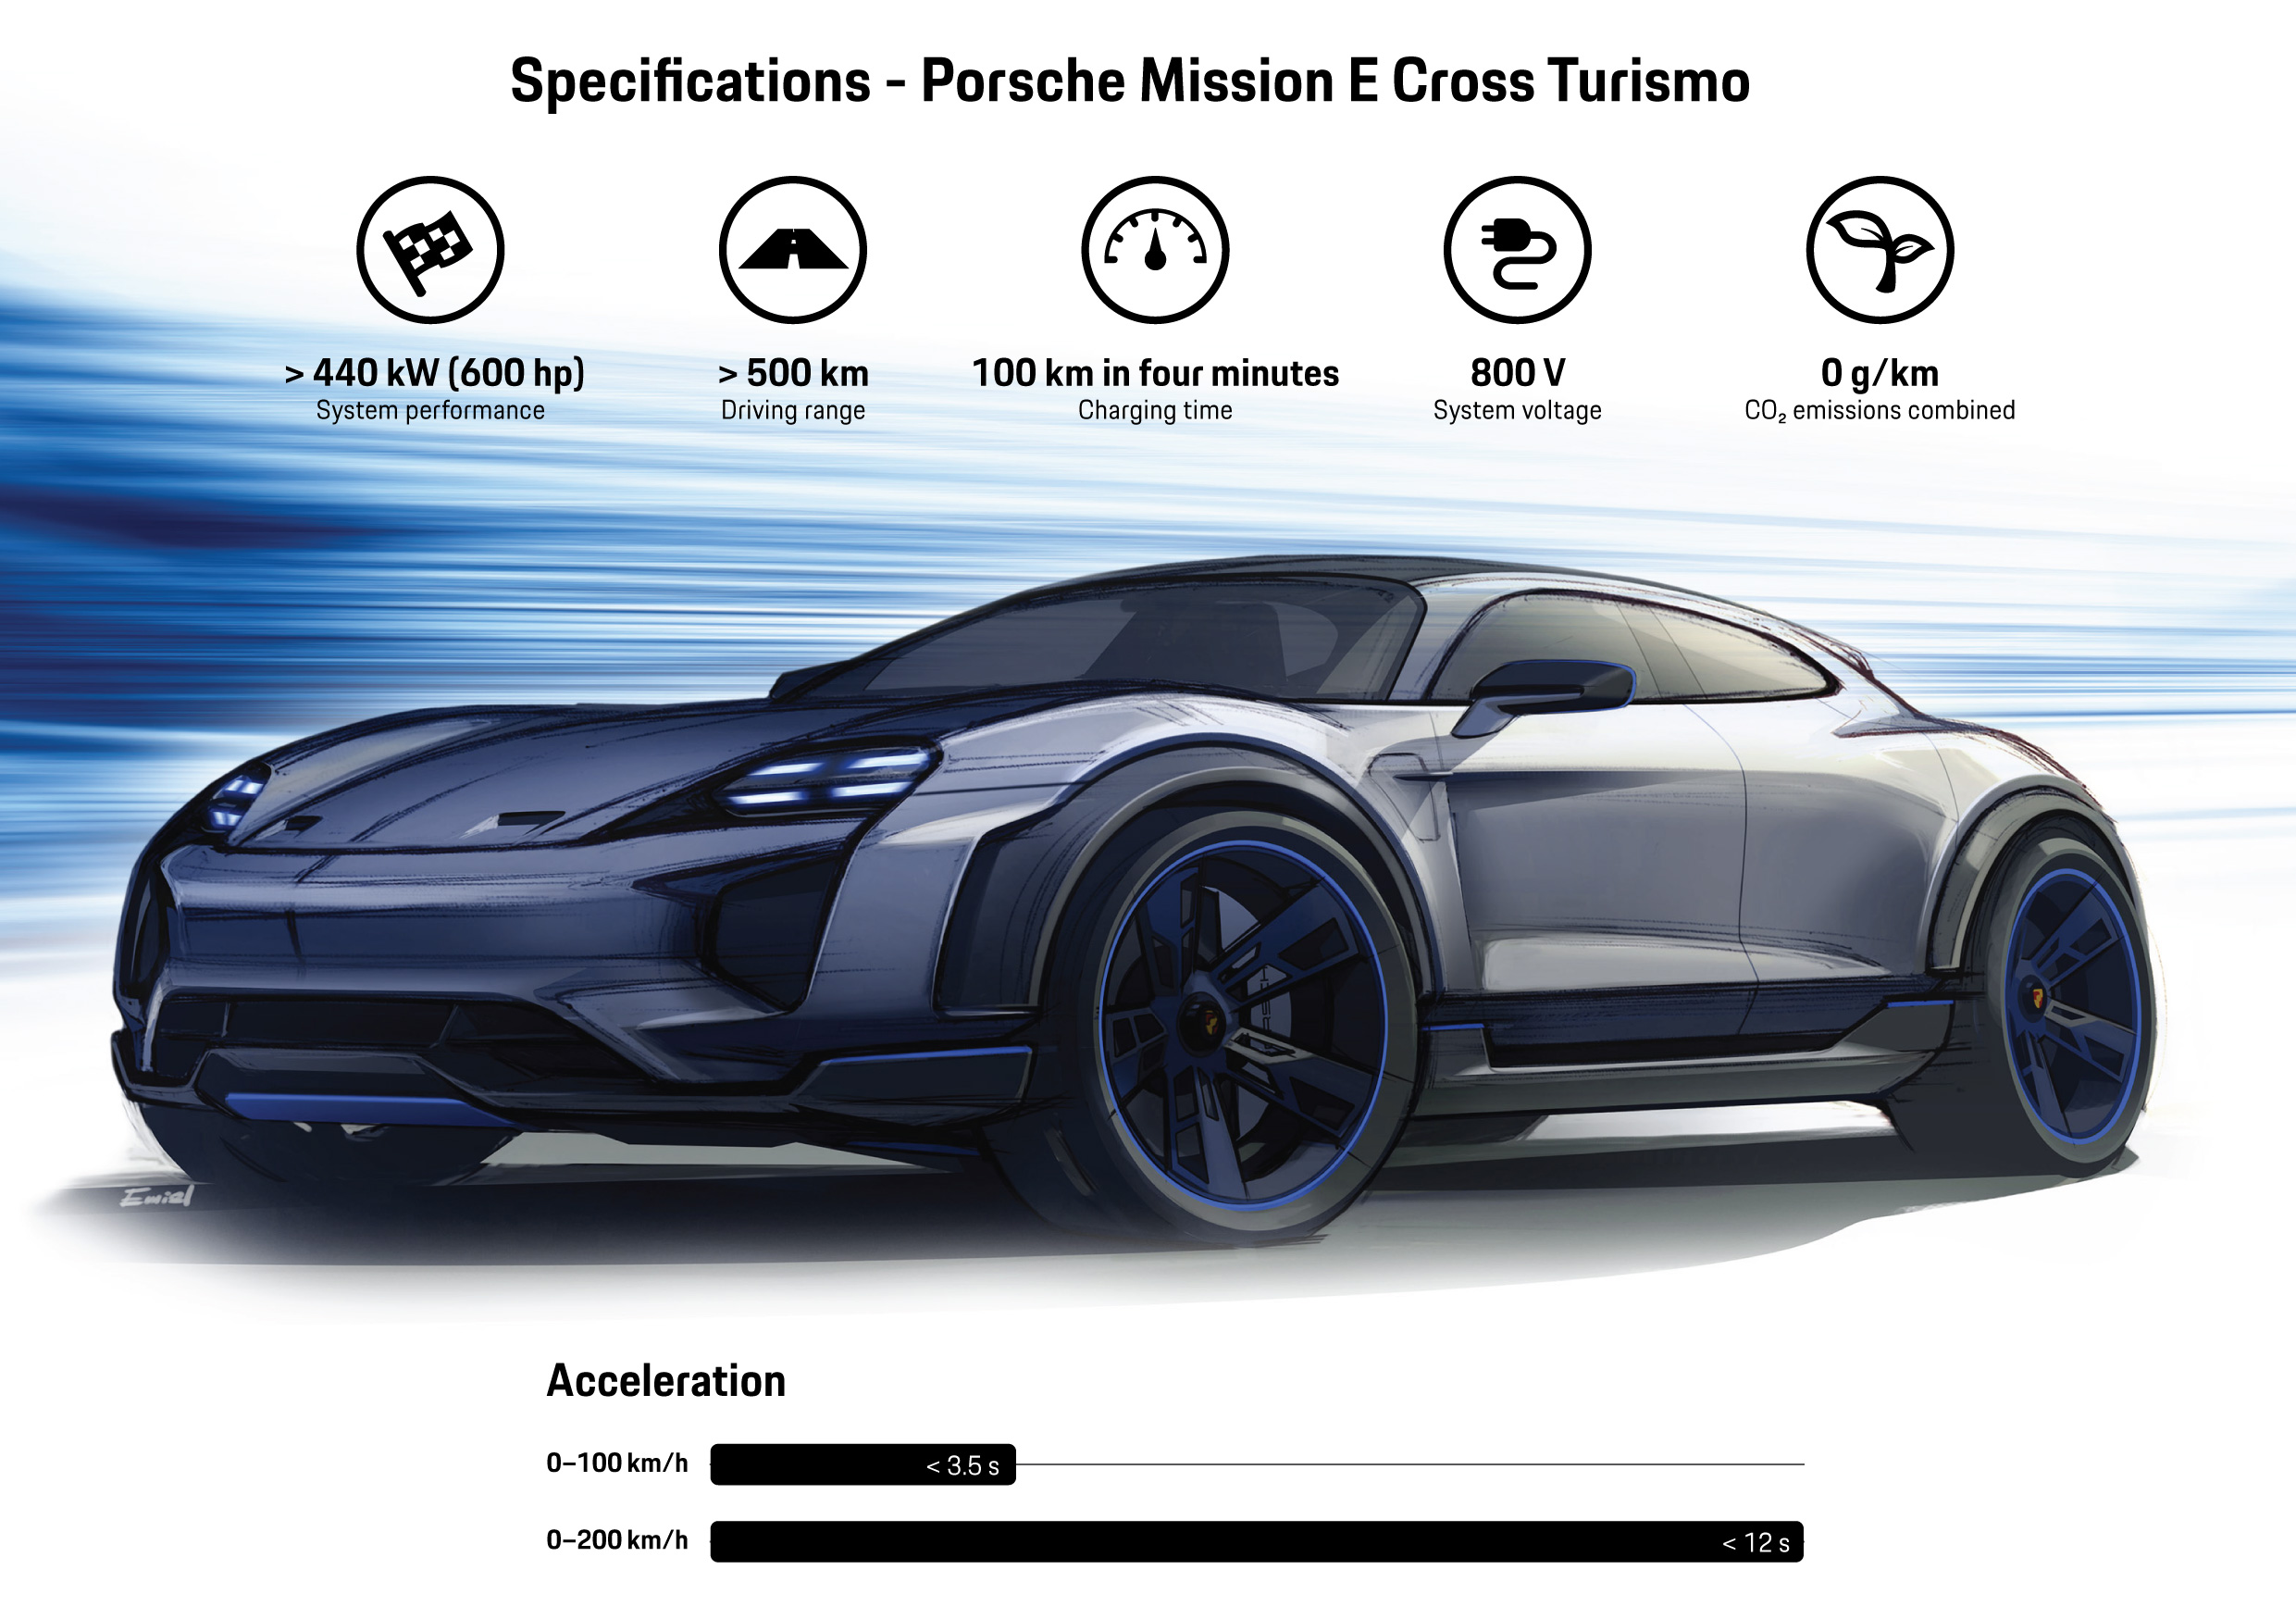 Mission E Cross Turismo, Infographic, 2018, Porsche AG